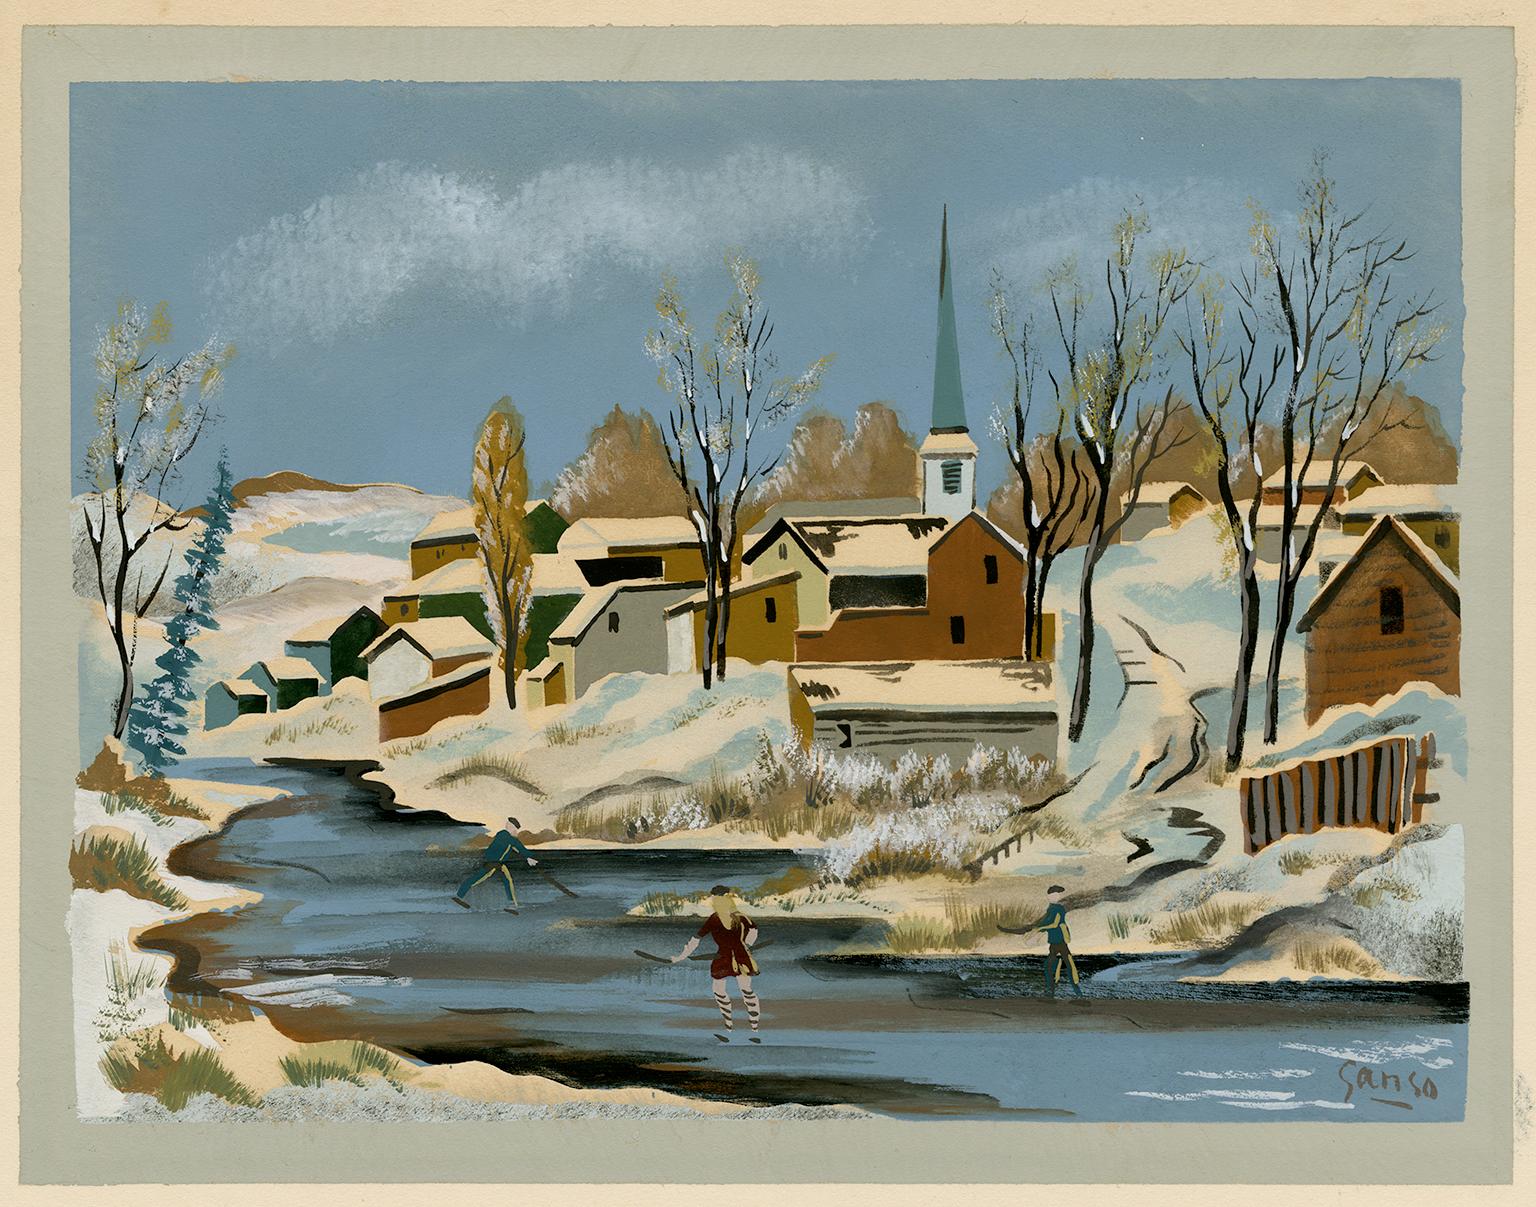 Emil Ganso Landscape Print - 'Skaters' — 1930s Woodstock, New York